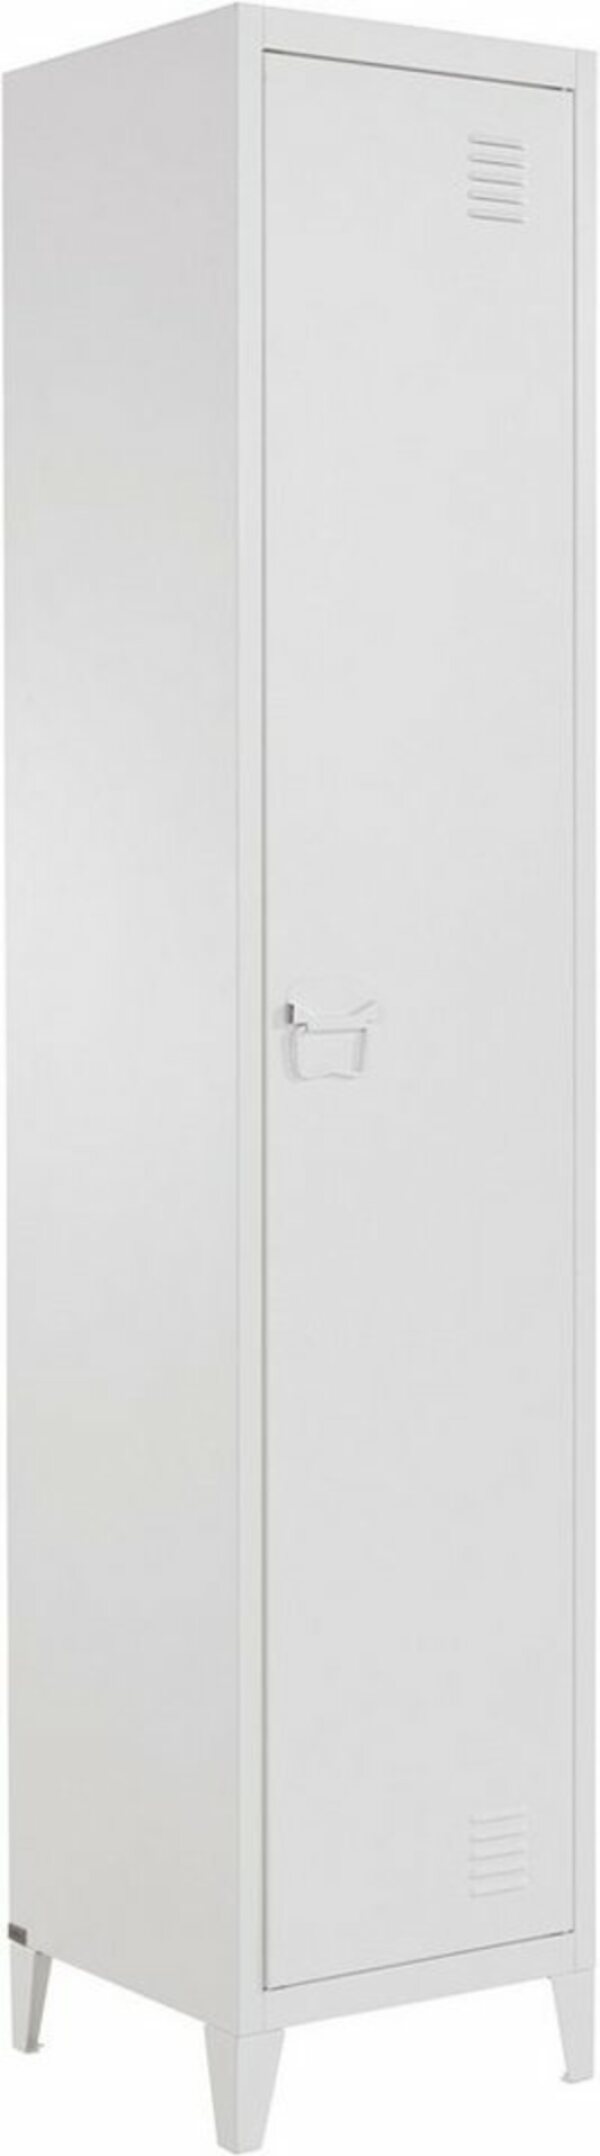 Bild 1 von andas Hochschrank »Jensjorg« Hochschrank aus pflegeleitem Metall in minimalistishes Design, mit 2 x Einlegeböden hinter der Tür, in verschiedenen Farbvarianten erhältlich, Höhe 180 cm